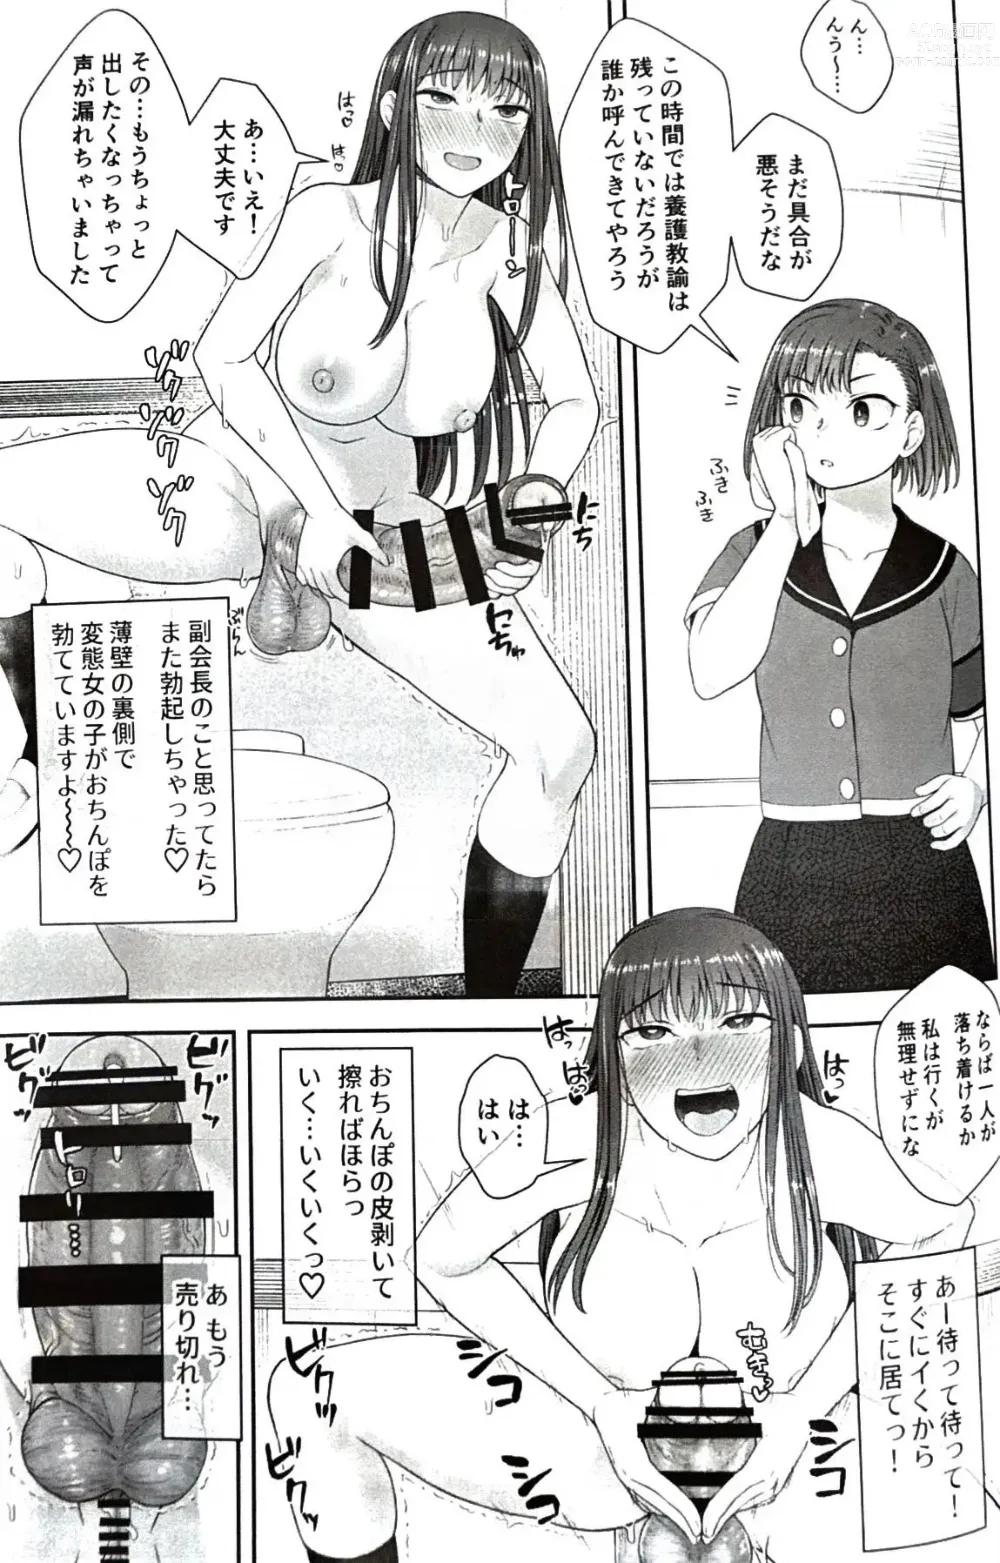 Page 26 of doujinshi Danseiki Roshutsu Jidori-han no Shoutai wa Kanojo dake ga Shitteiru.